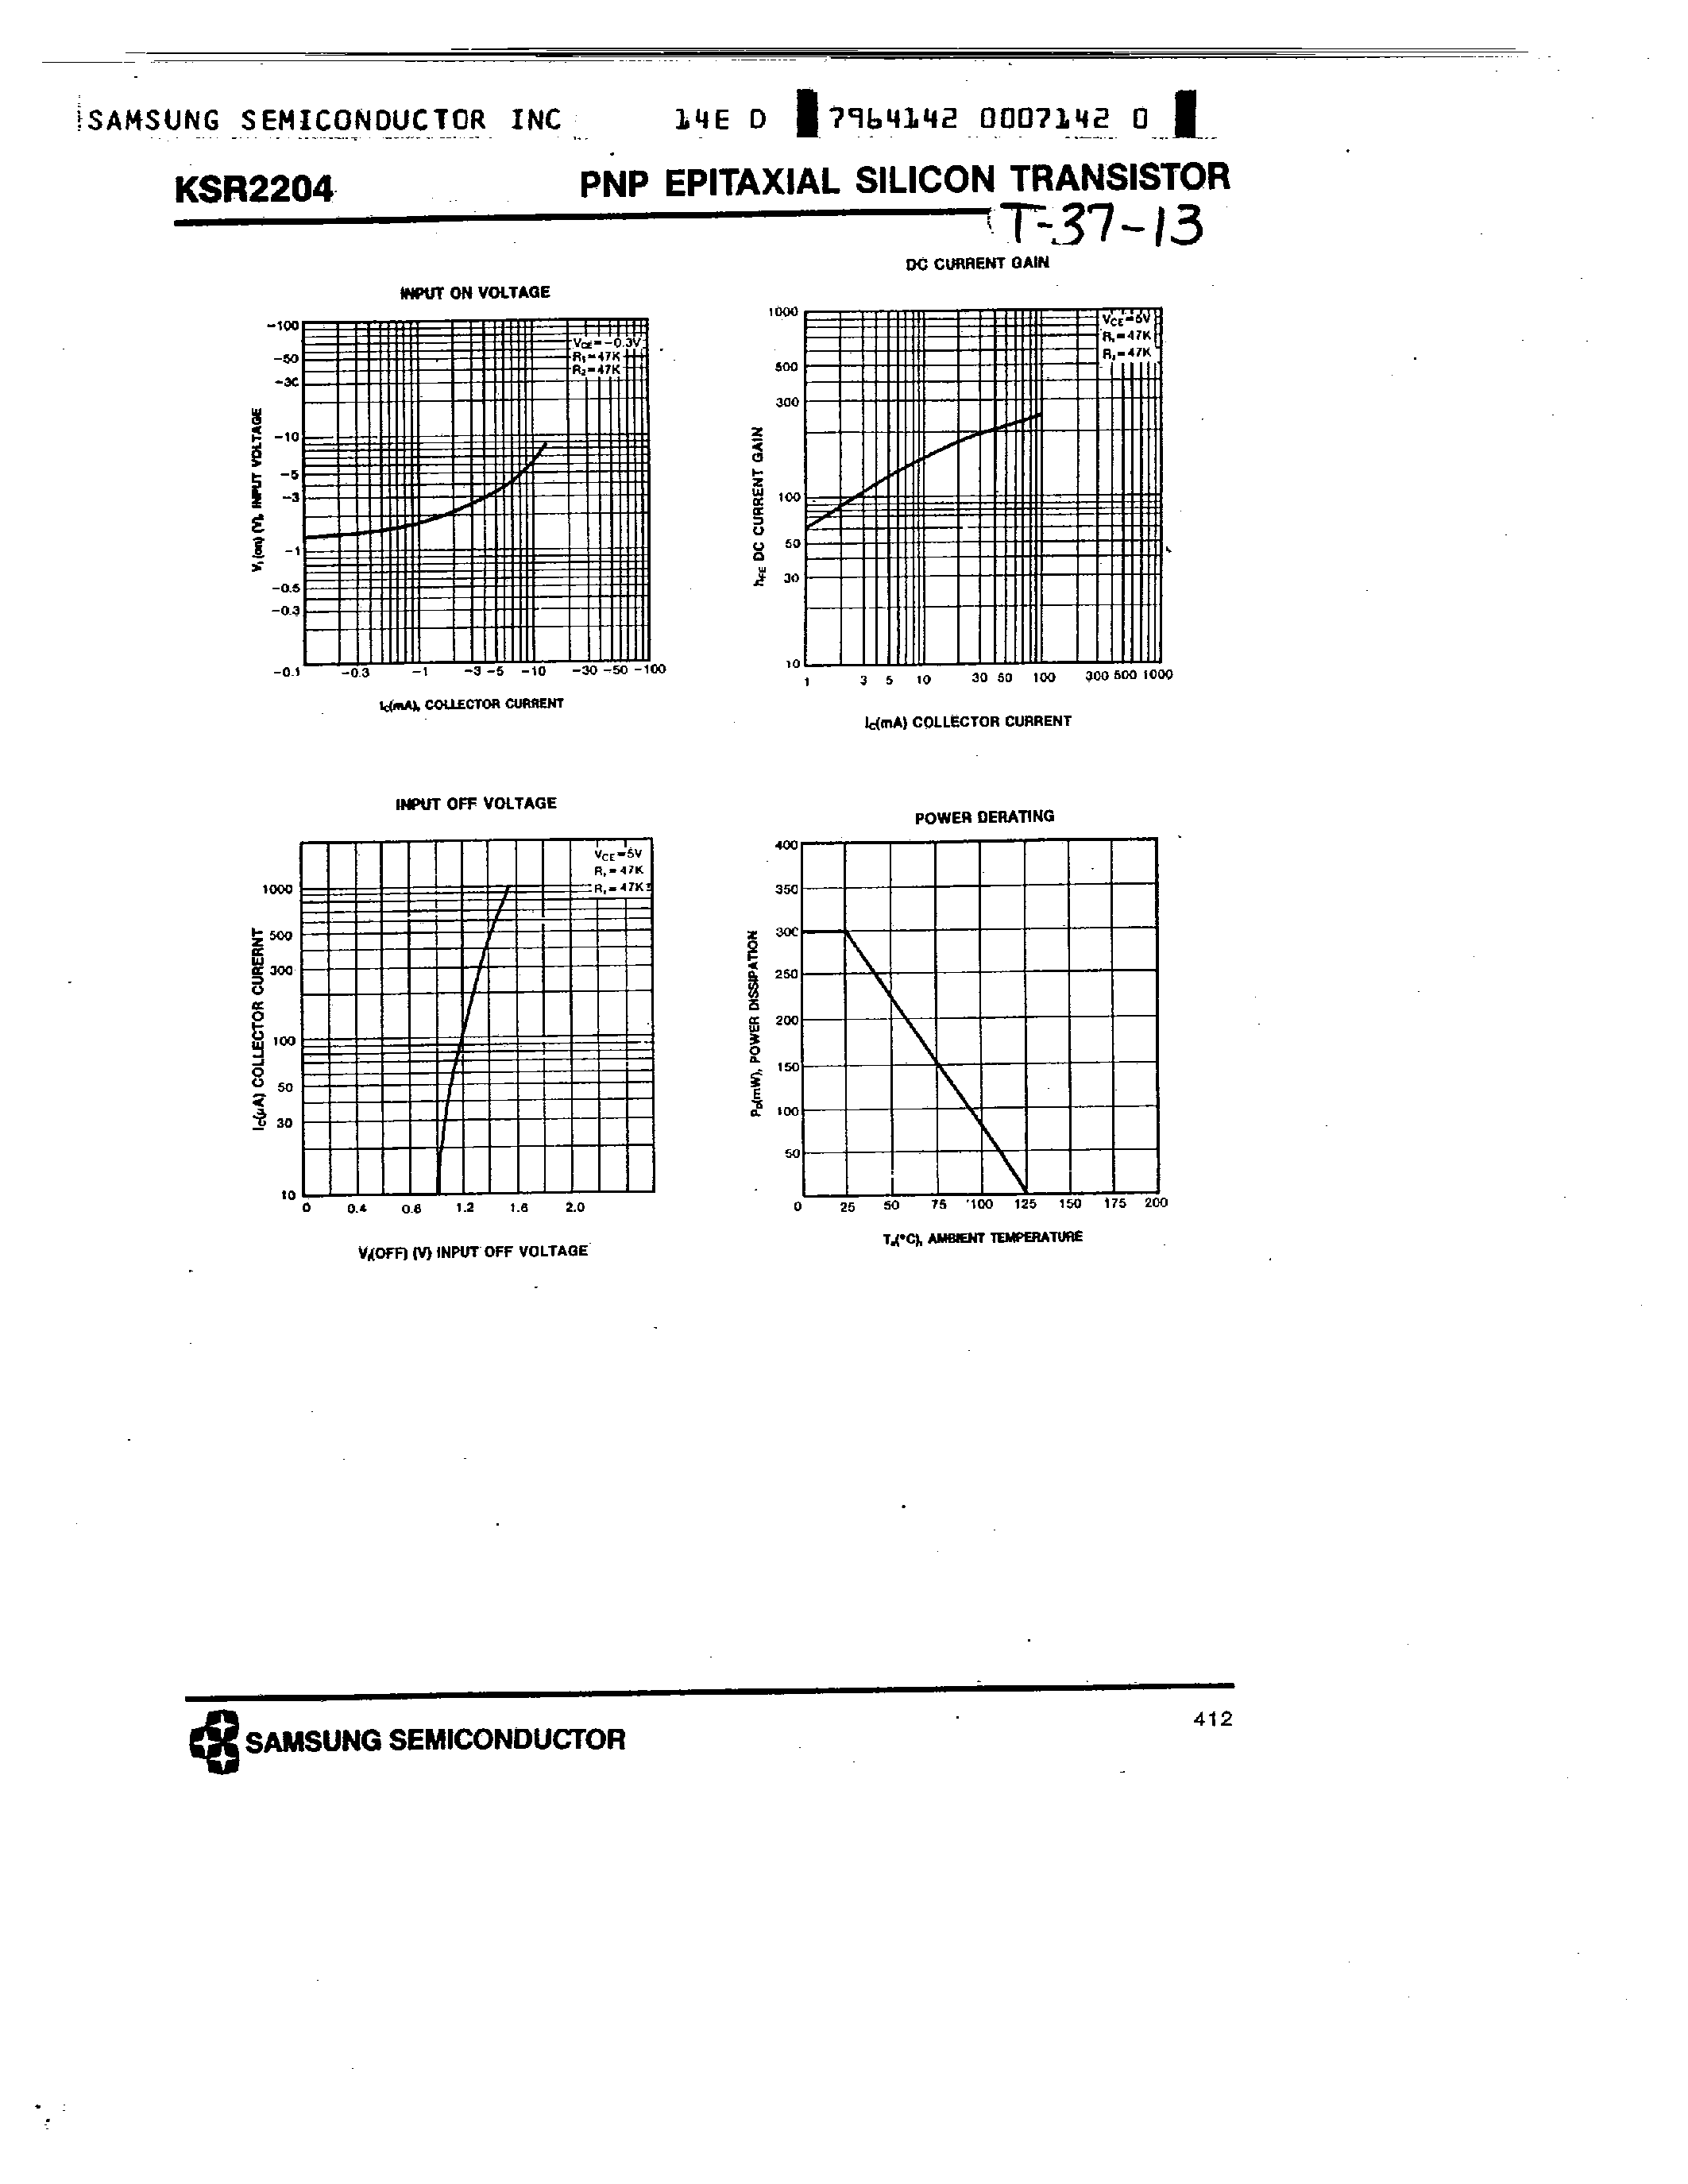 Datasheet KSR2204 - PNP (SWITCHING APPLICATION) page 2